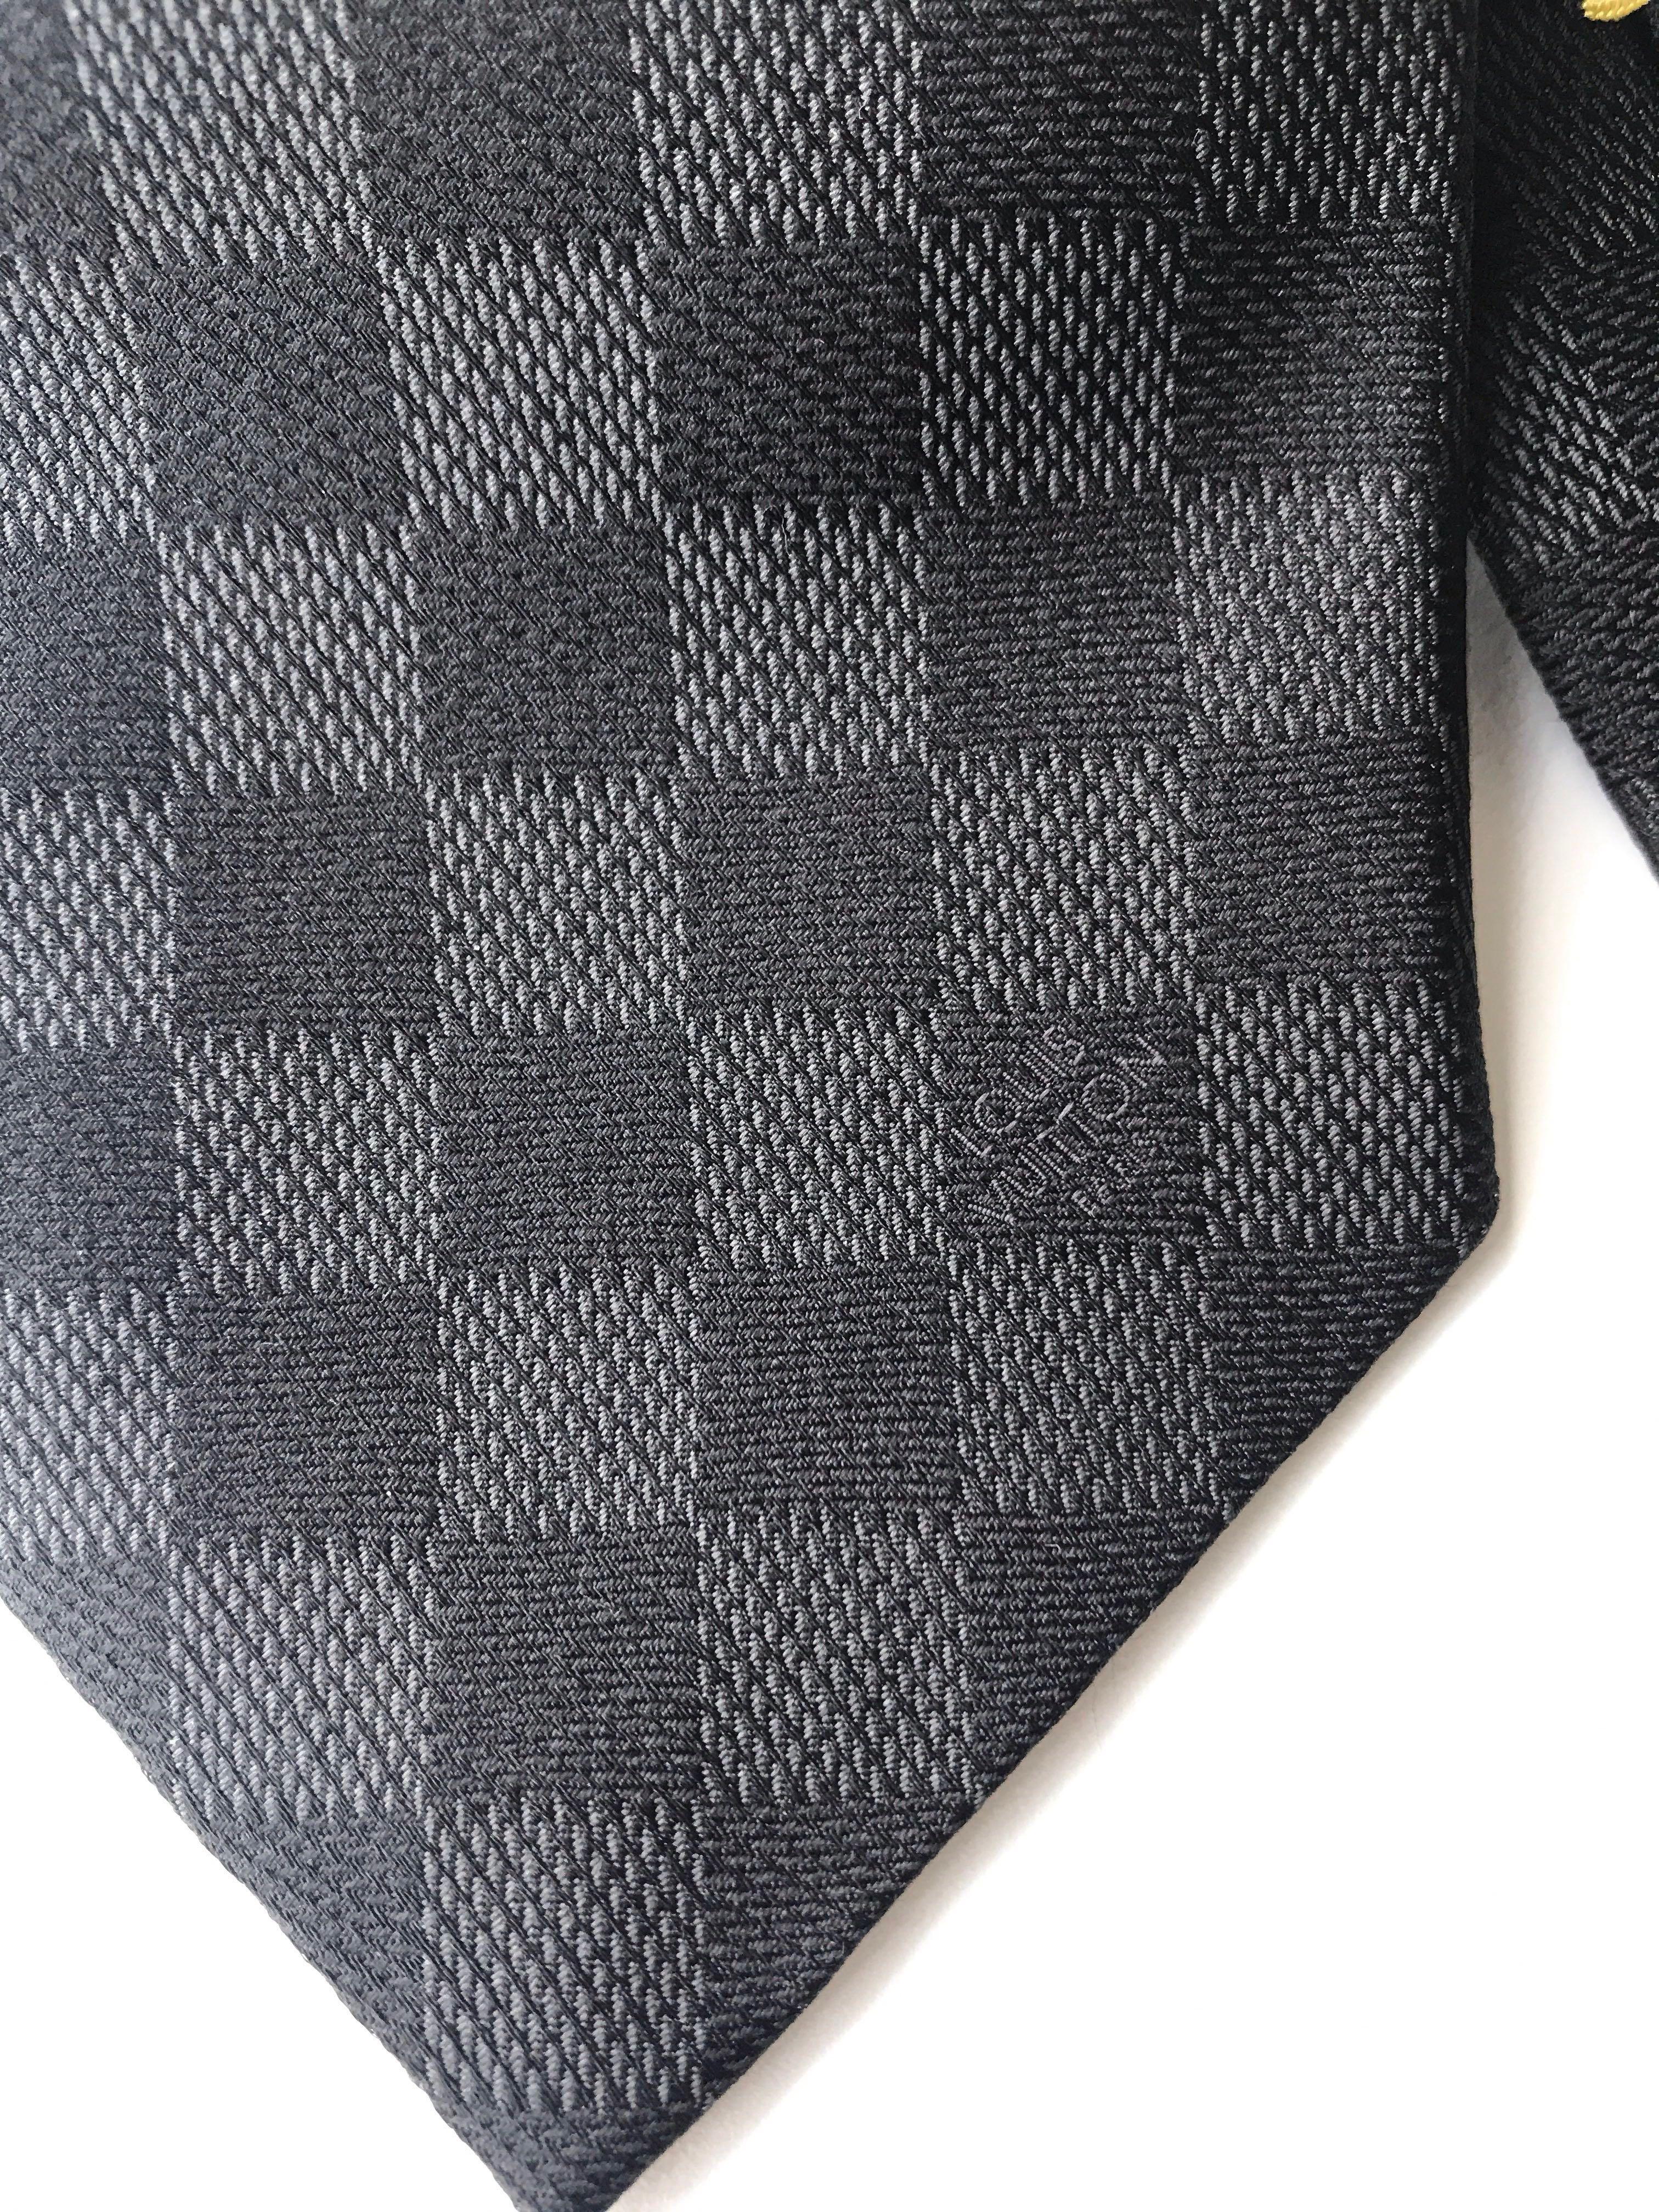 Louis Vuitton Damier Damier Classique Tie, Black